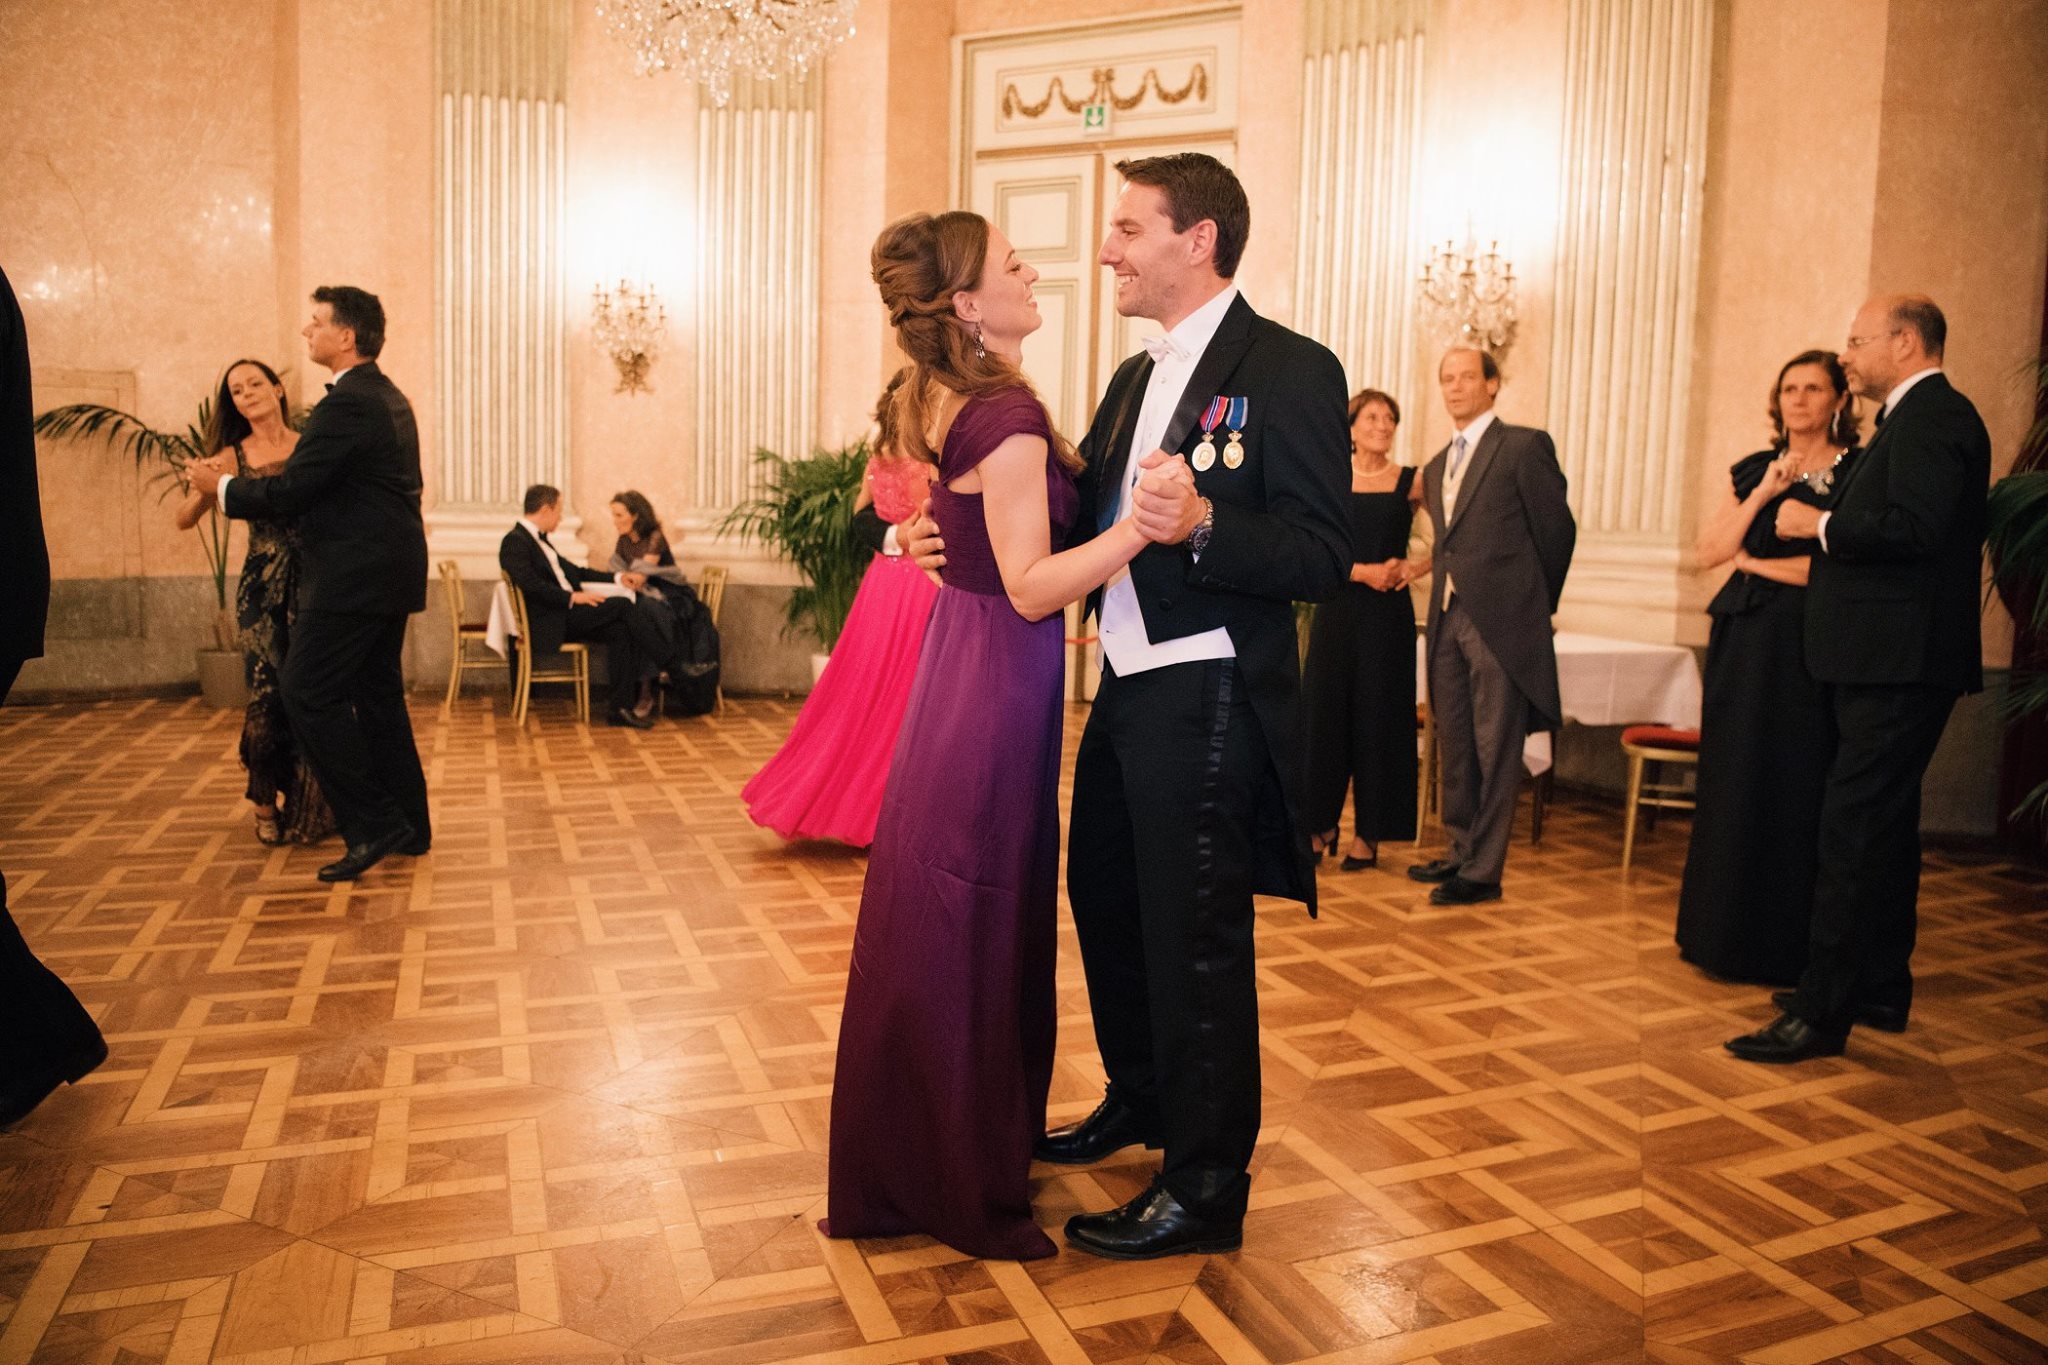 Pentru petrecerea fastuoasă, Alina Binder a ales o rochie violet, lungă şi cu decolteu